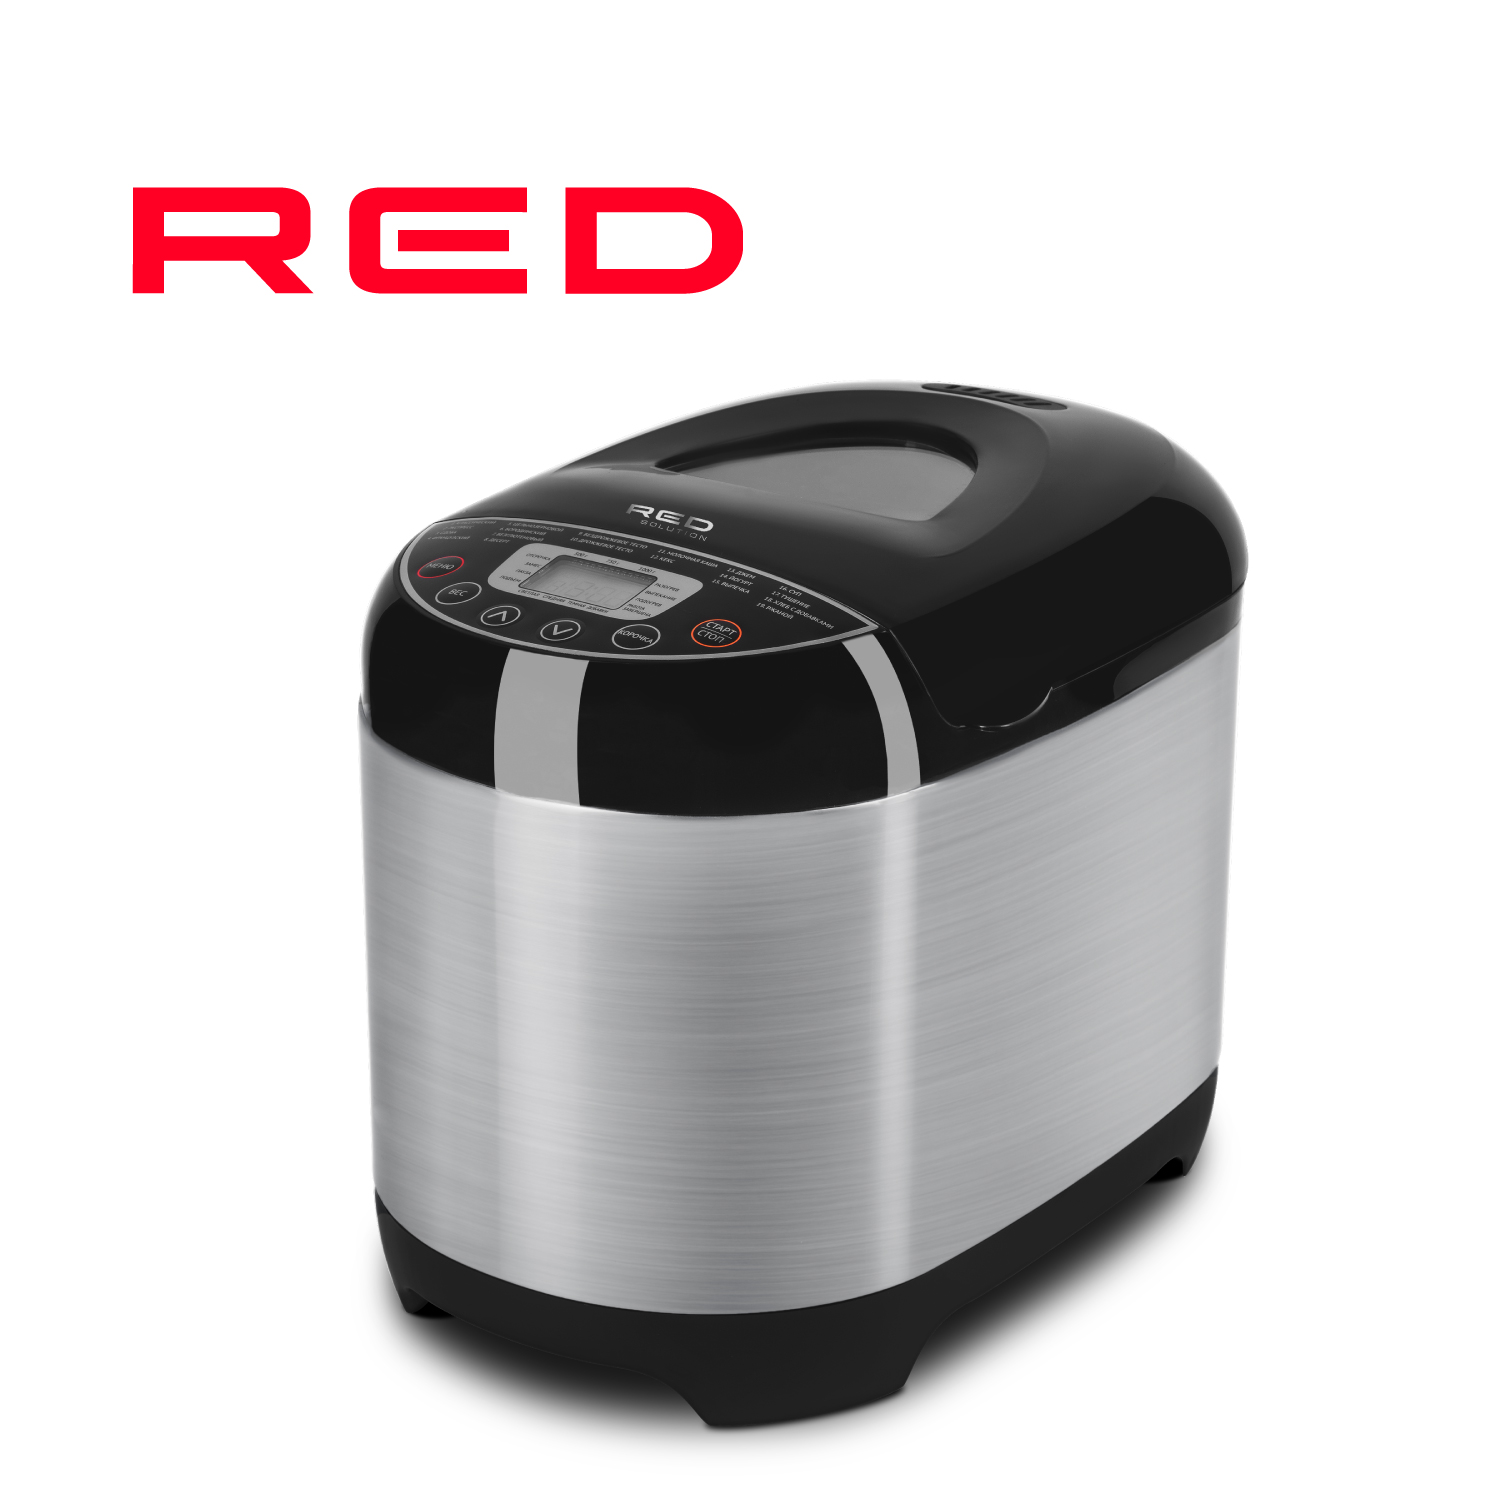 Хлебопечка RED SOLUTION RBM-M1911 серебристый, серый, черный хлебопечка gfgril gfb 3000 серебристый